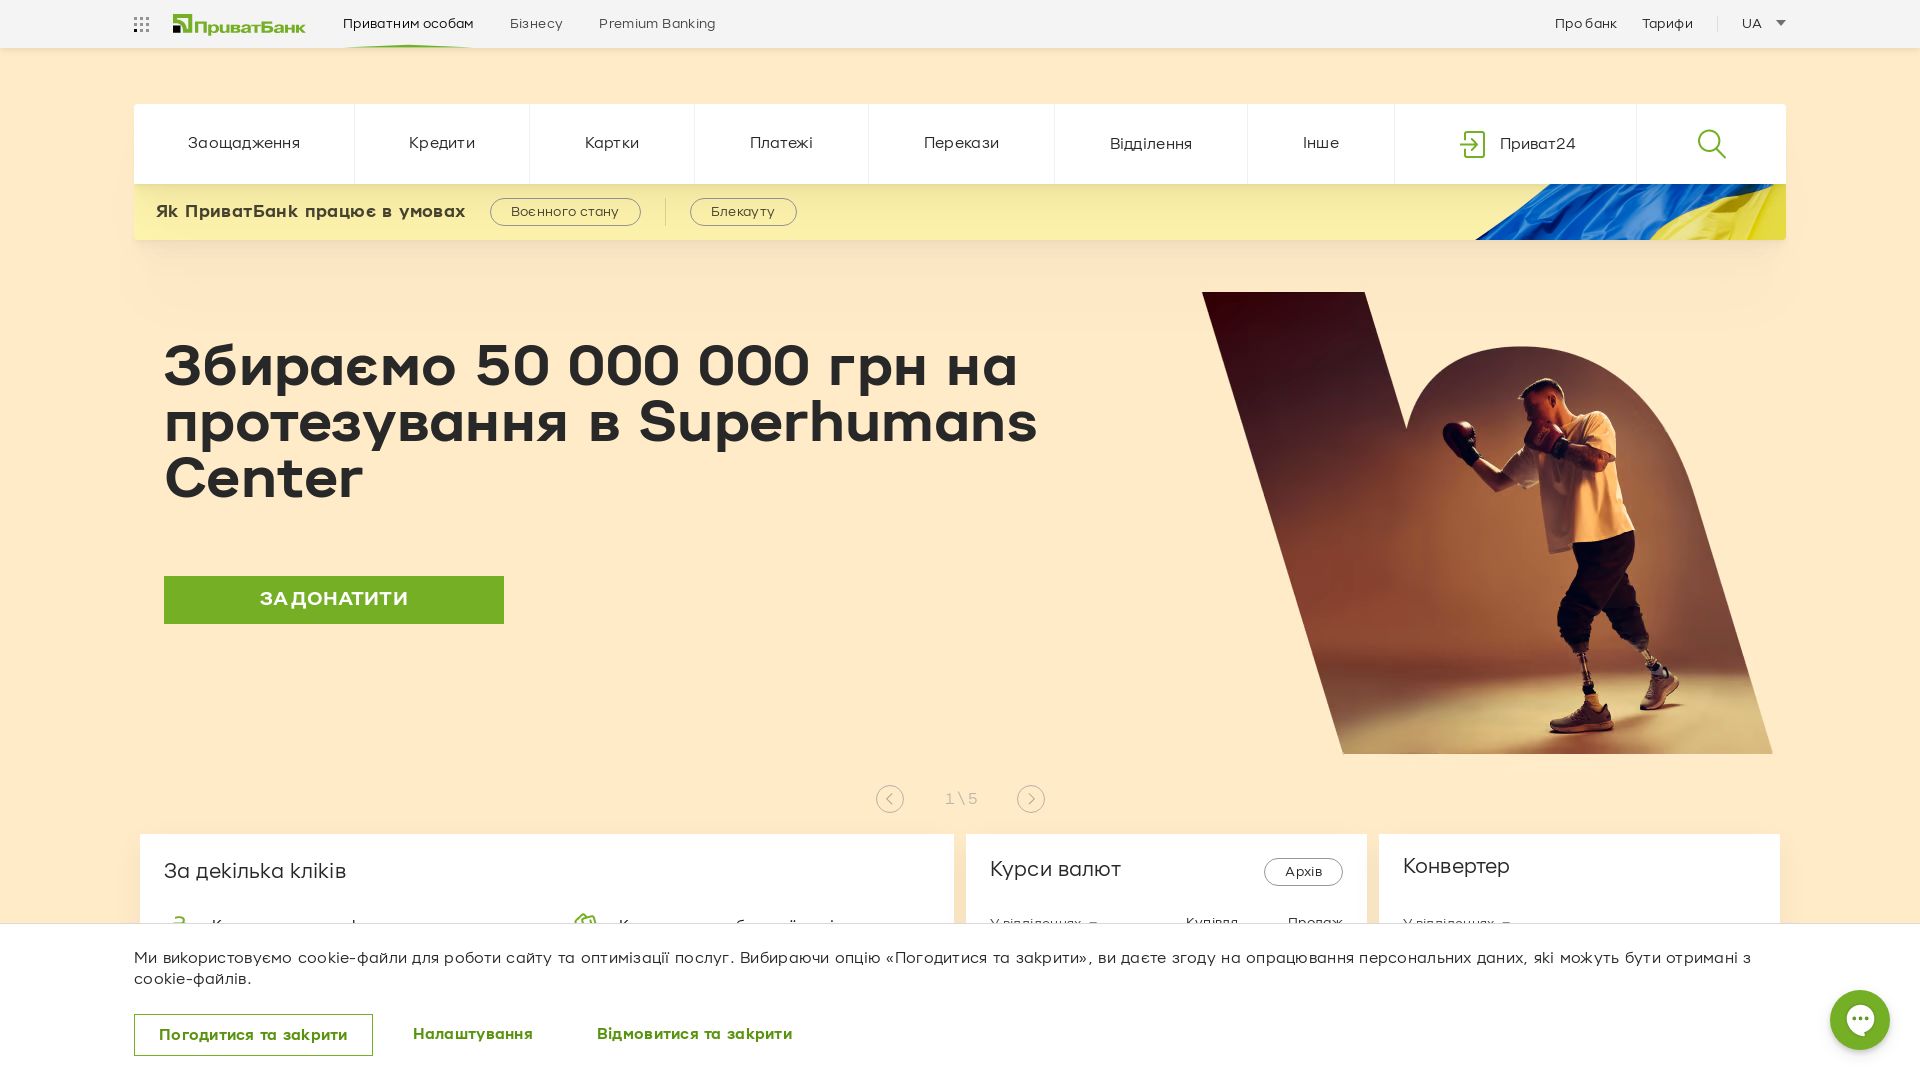 网站状态 privatbank.ua 是  在线的